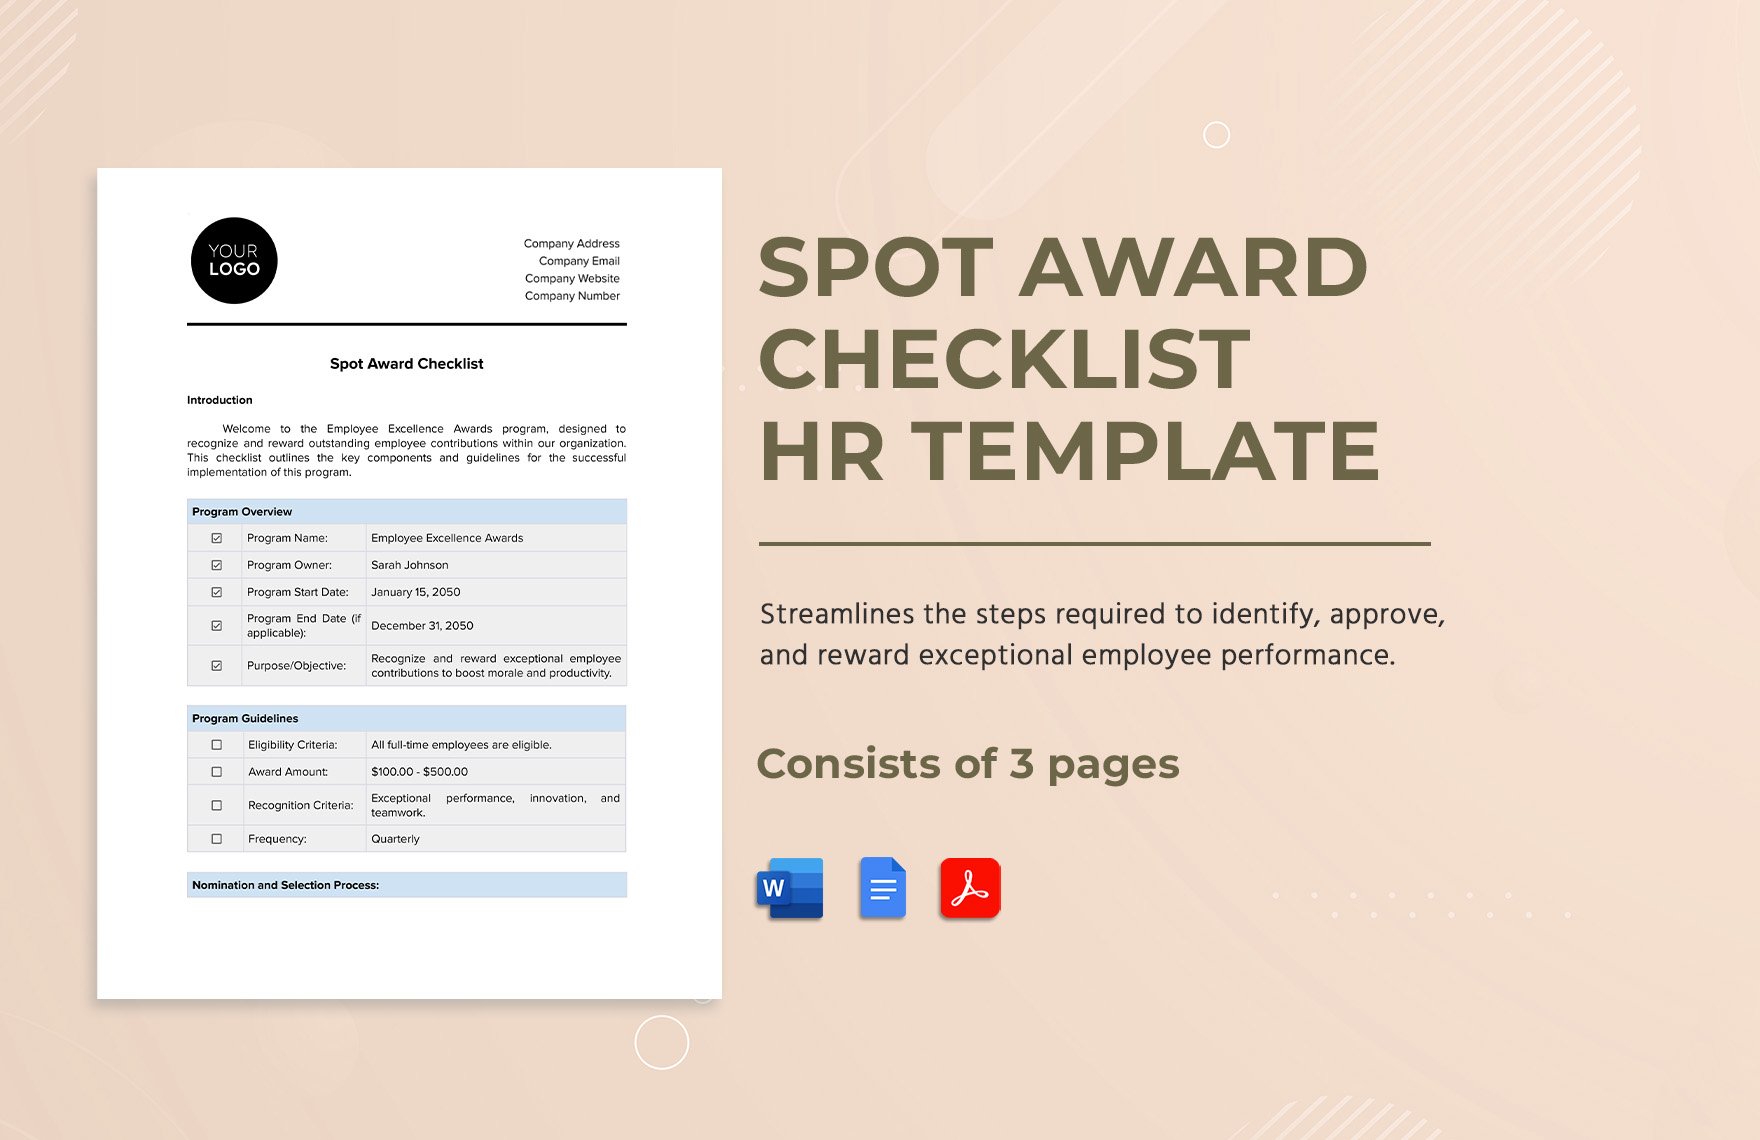 Spot Award Checklist HR Template